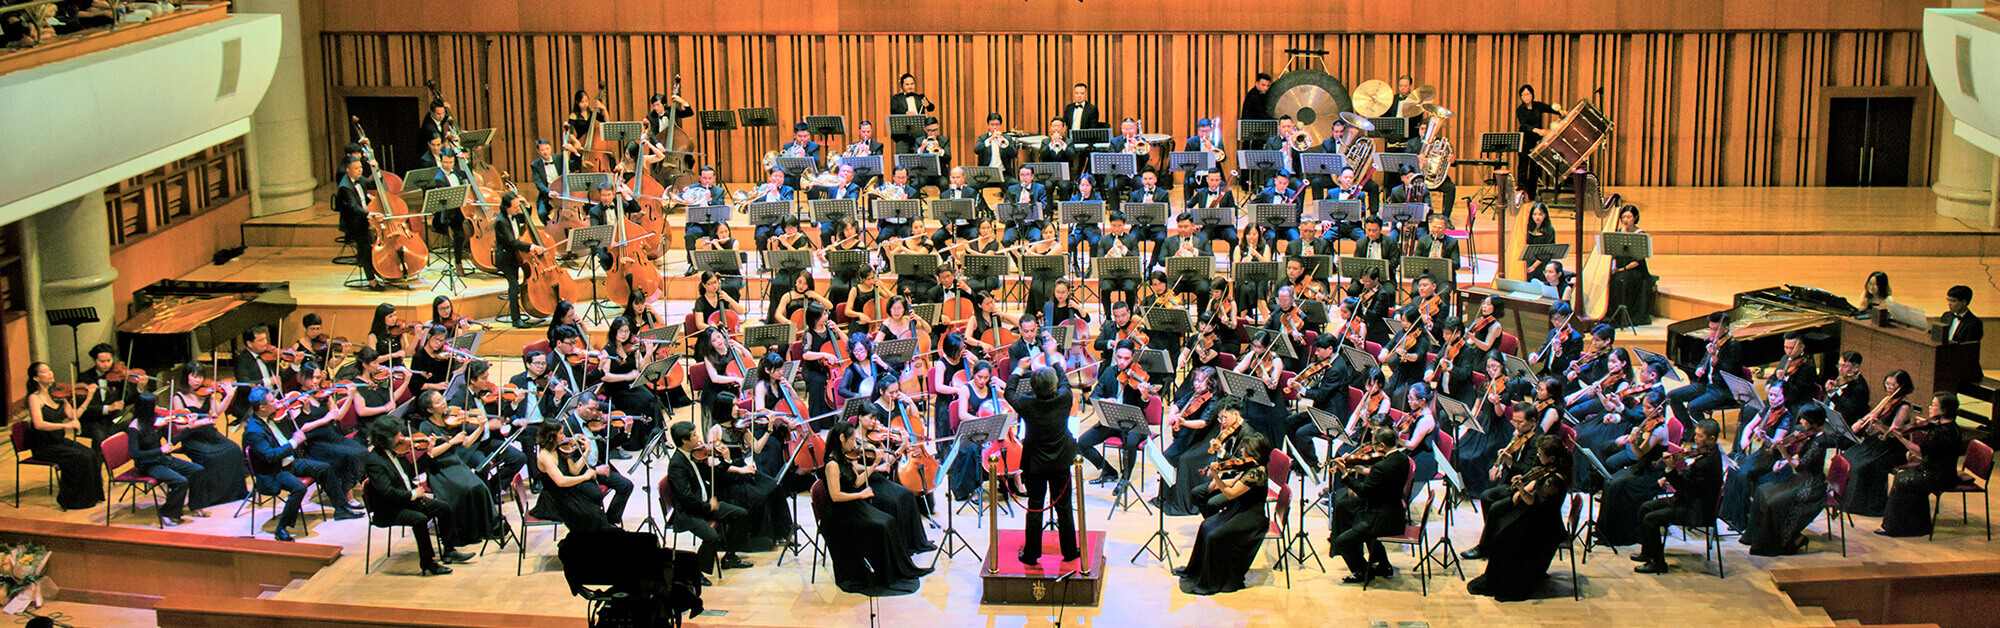 ベトナム国立交響楽団について